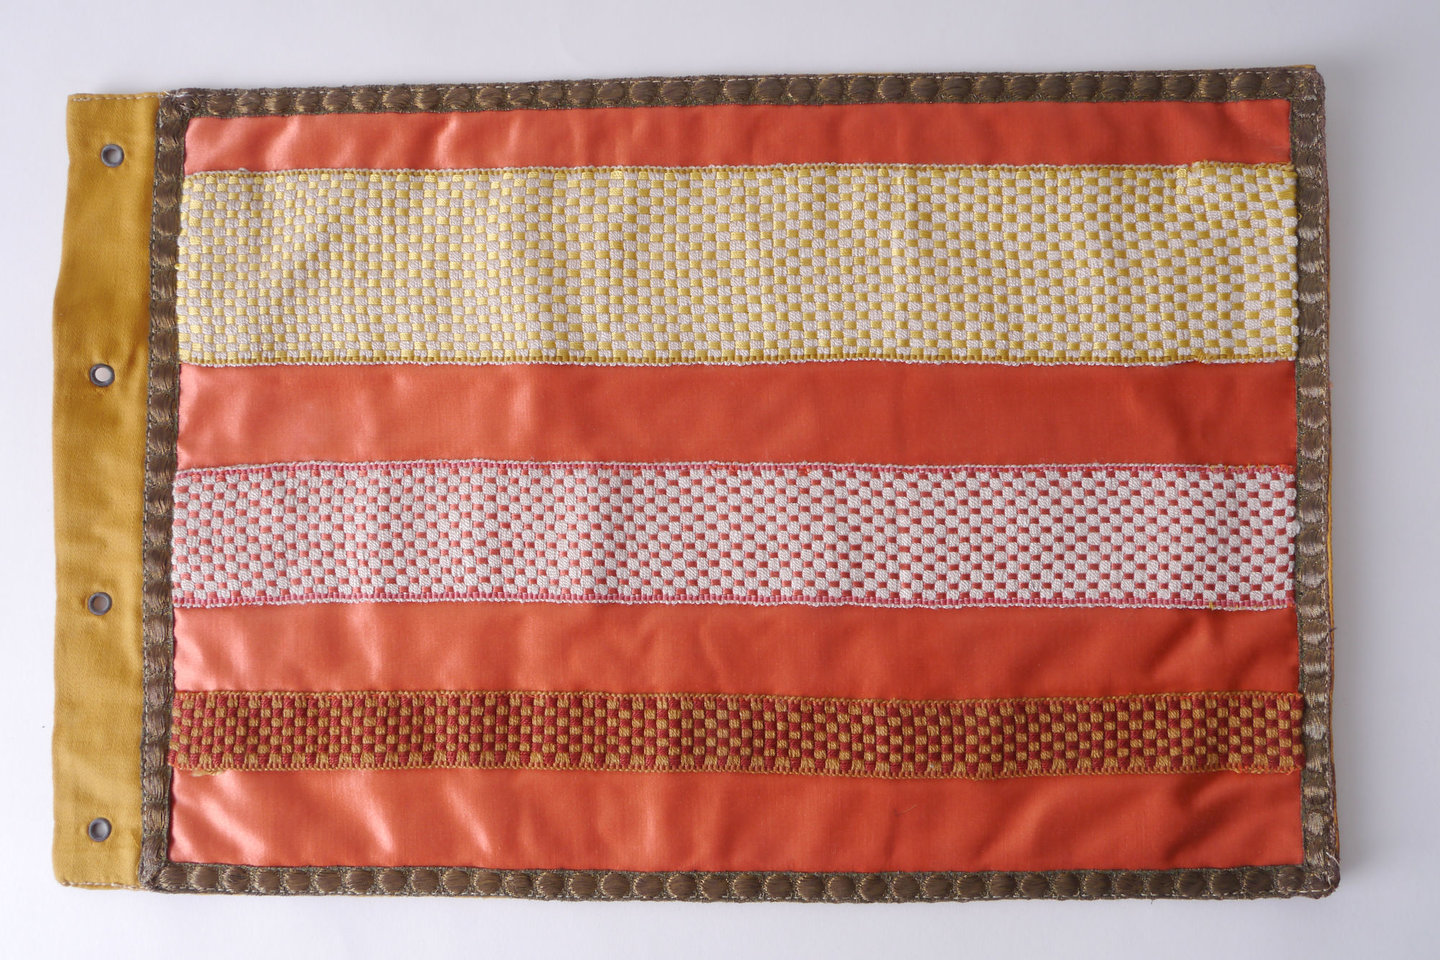 Staalkaart in textiel met voorbeelden van galons om passement te vervaardigen